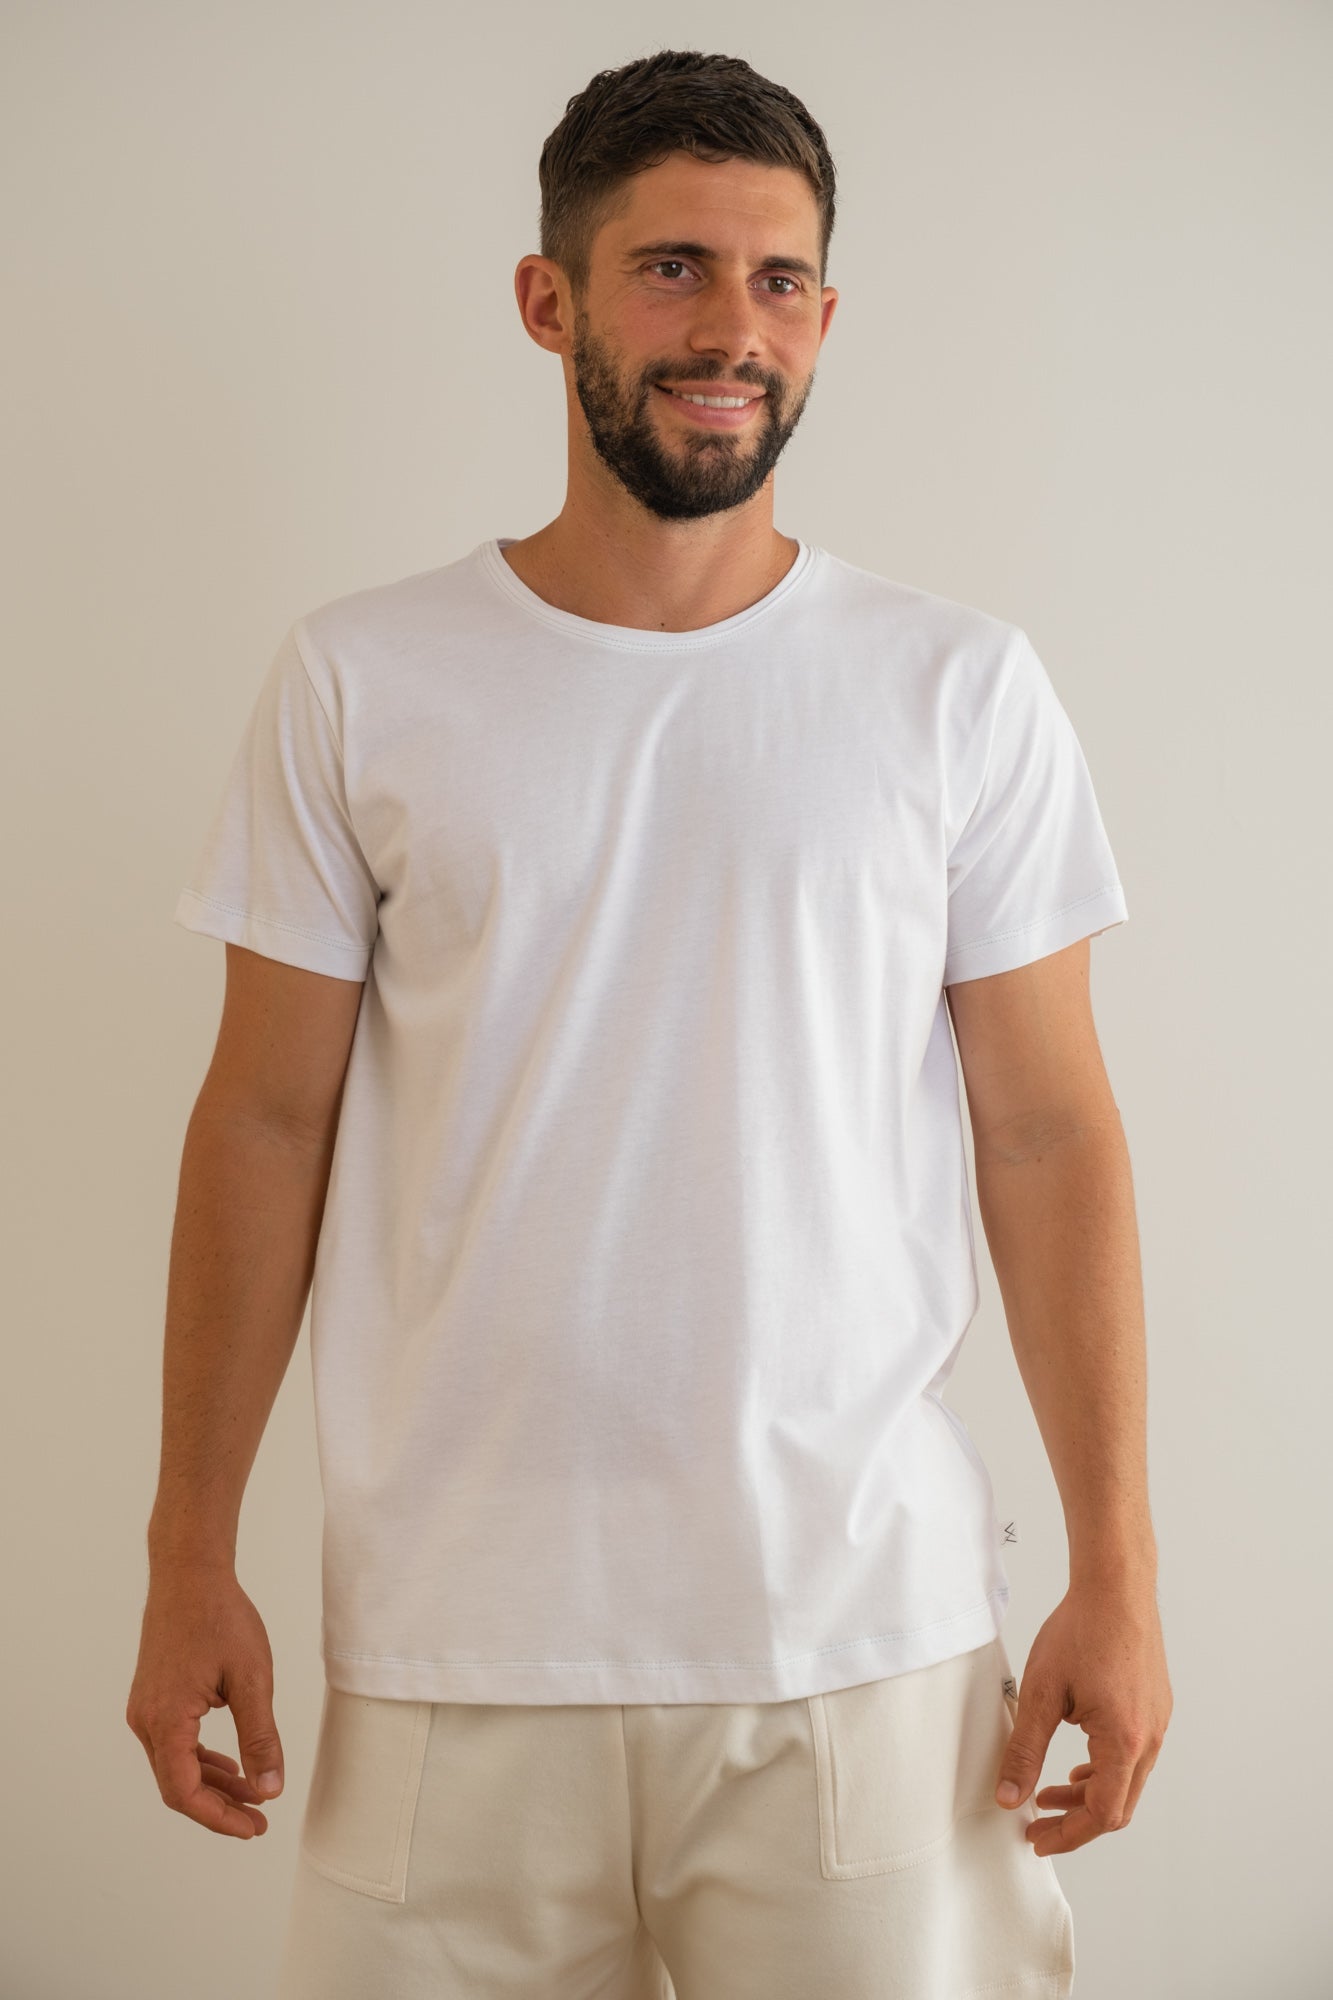 MIA Moda Regenerativa Camisetas S Camiseta Esencial hombre - blanco